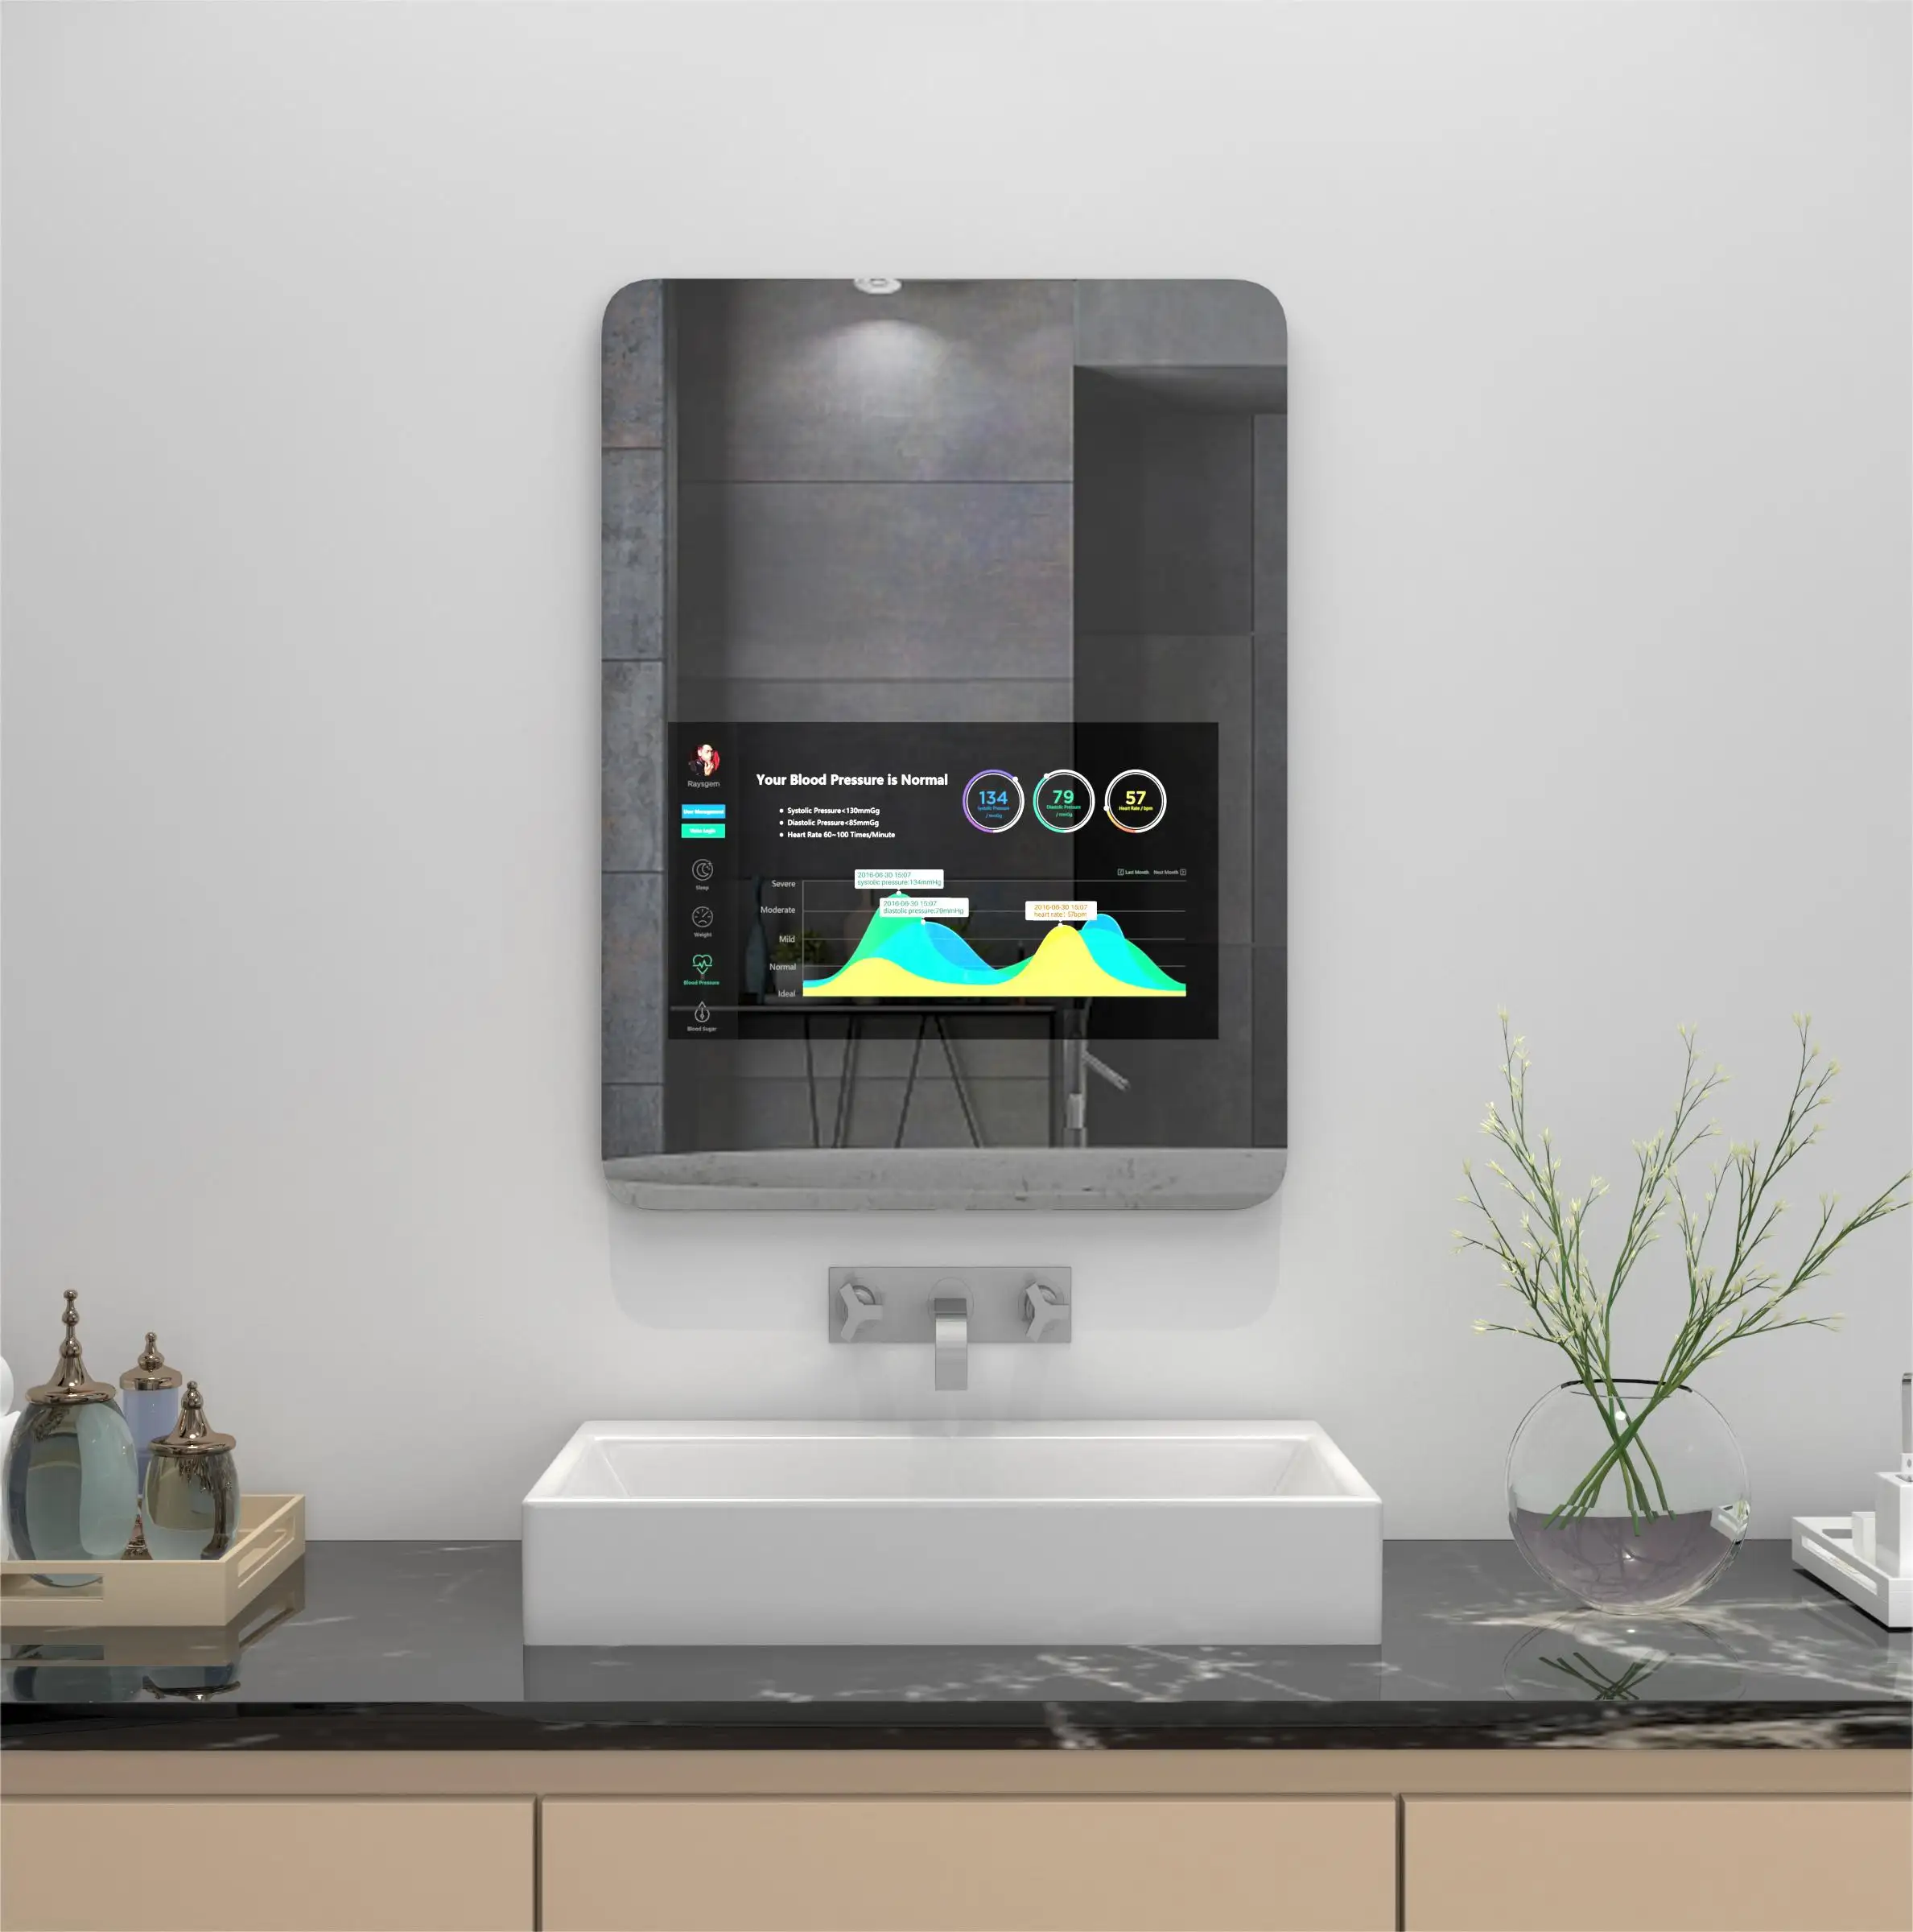 Fudakin jam Digital peredupan kualitas tinggi lampu Led dengan lampu latar yang dipatenkan kabinet cermin cerdas kamar mandi Sensor sentuh